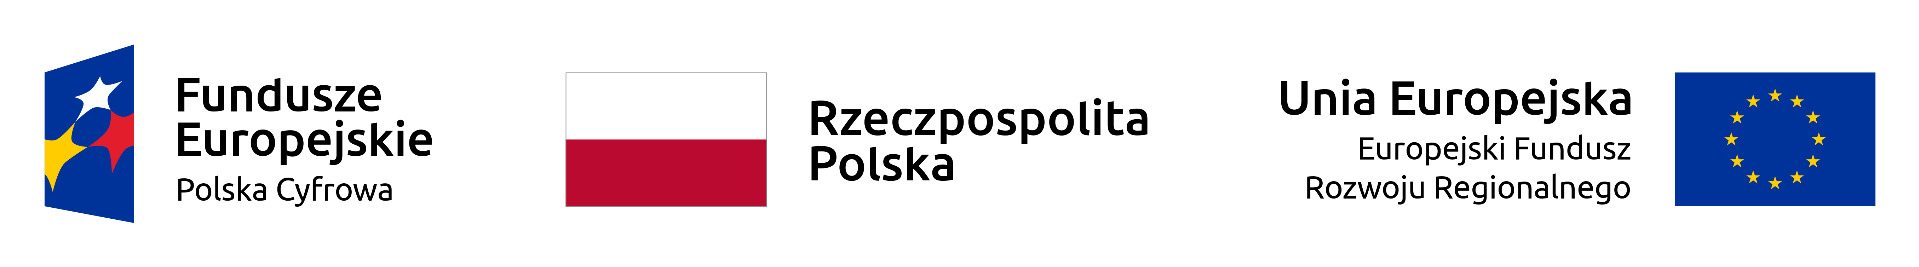 Zdjęcie przedstawia logotyp Funduszy Europejskich (niebieskie tło i trzy gwiazdy: żółta, czerwona i biała), biało-czerwoną flagę Rzeczpospolitej Polski oraz Unii Europejskiej (na niebieskim tle, żółte gwiazdy w kręgu)